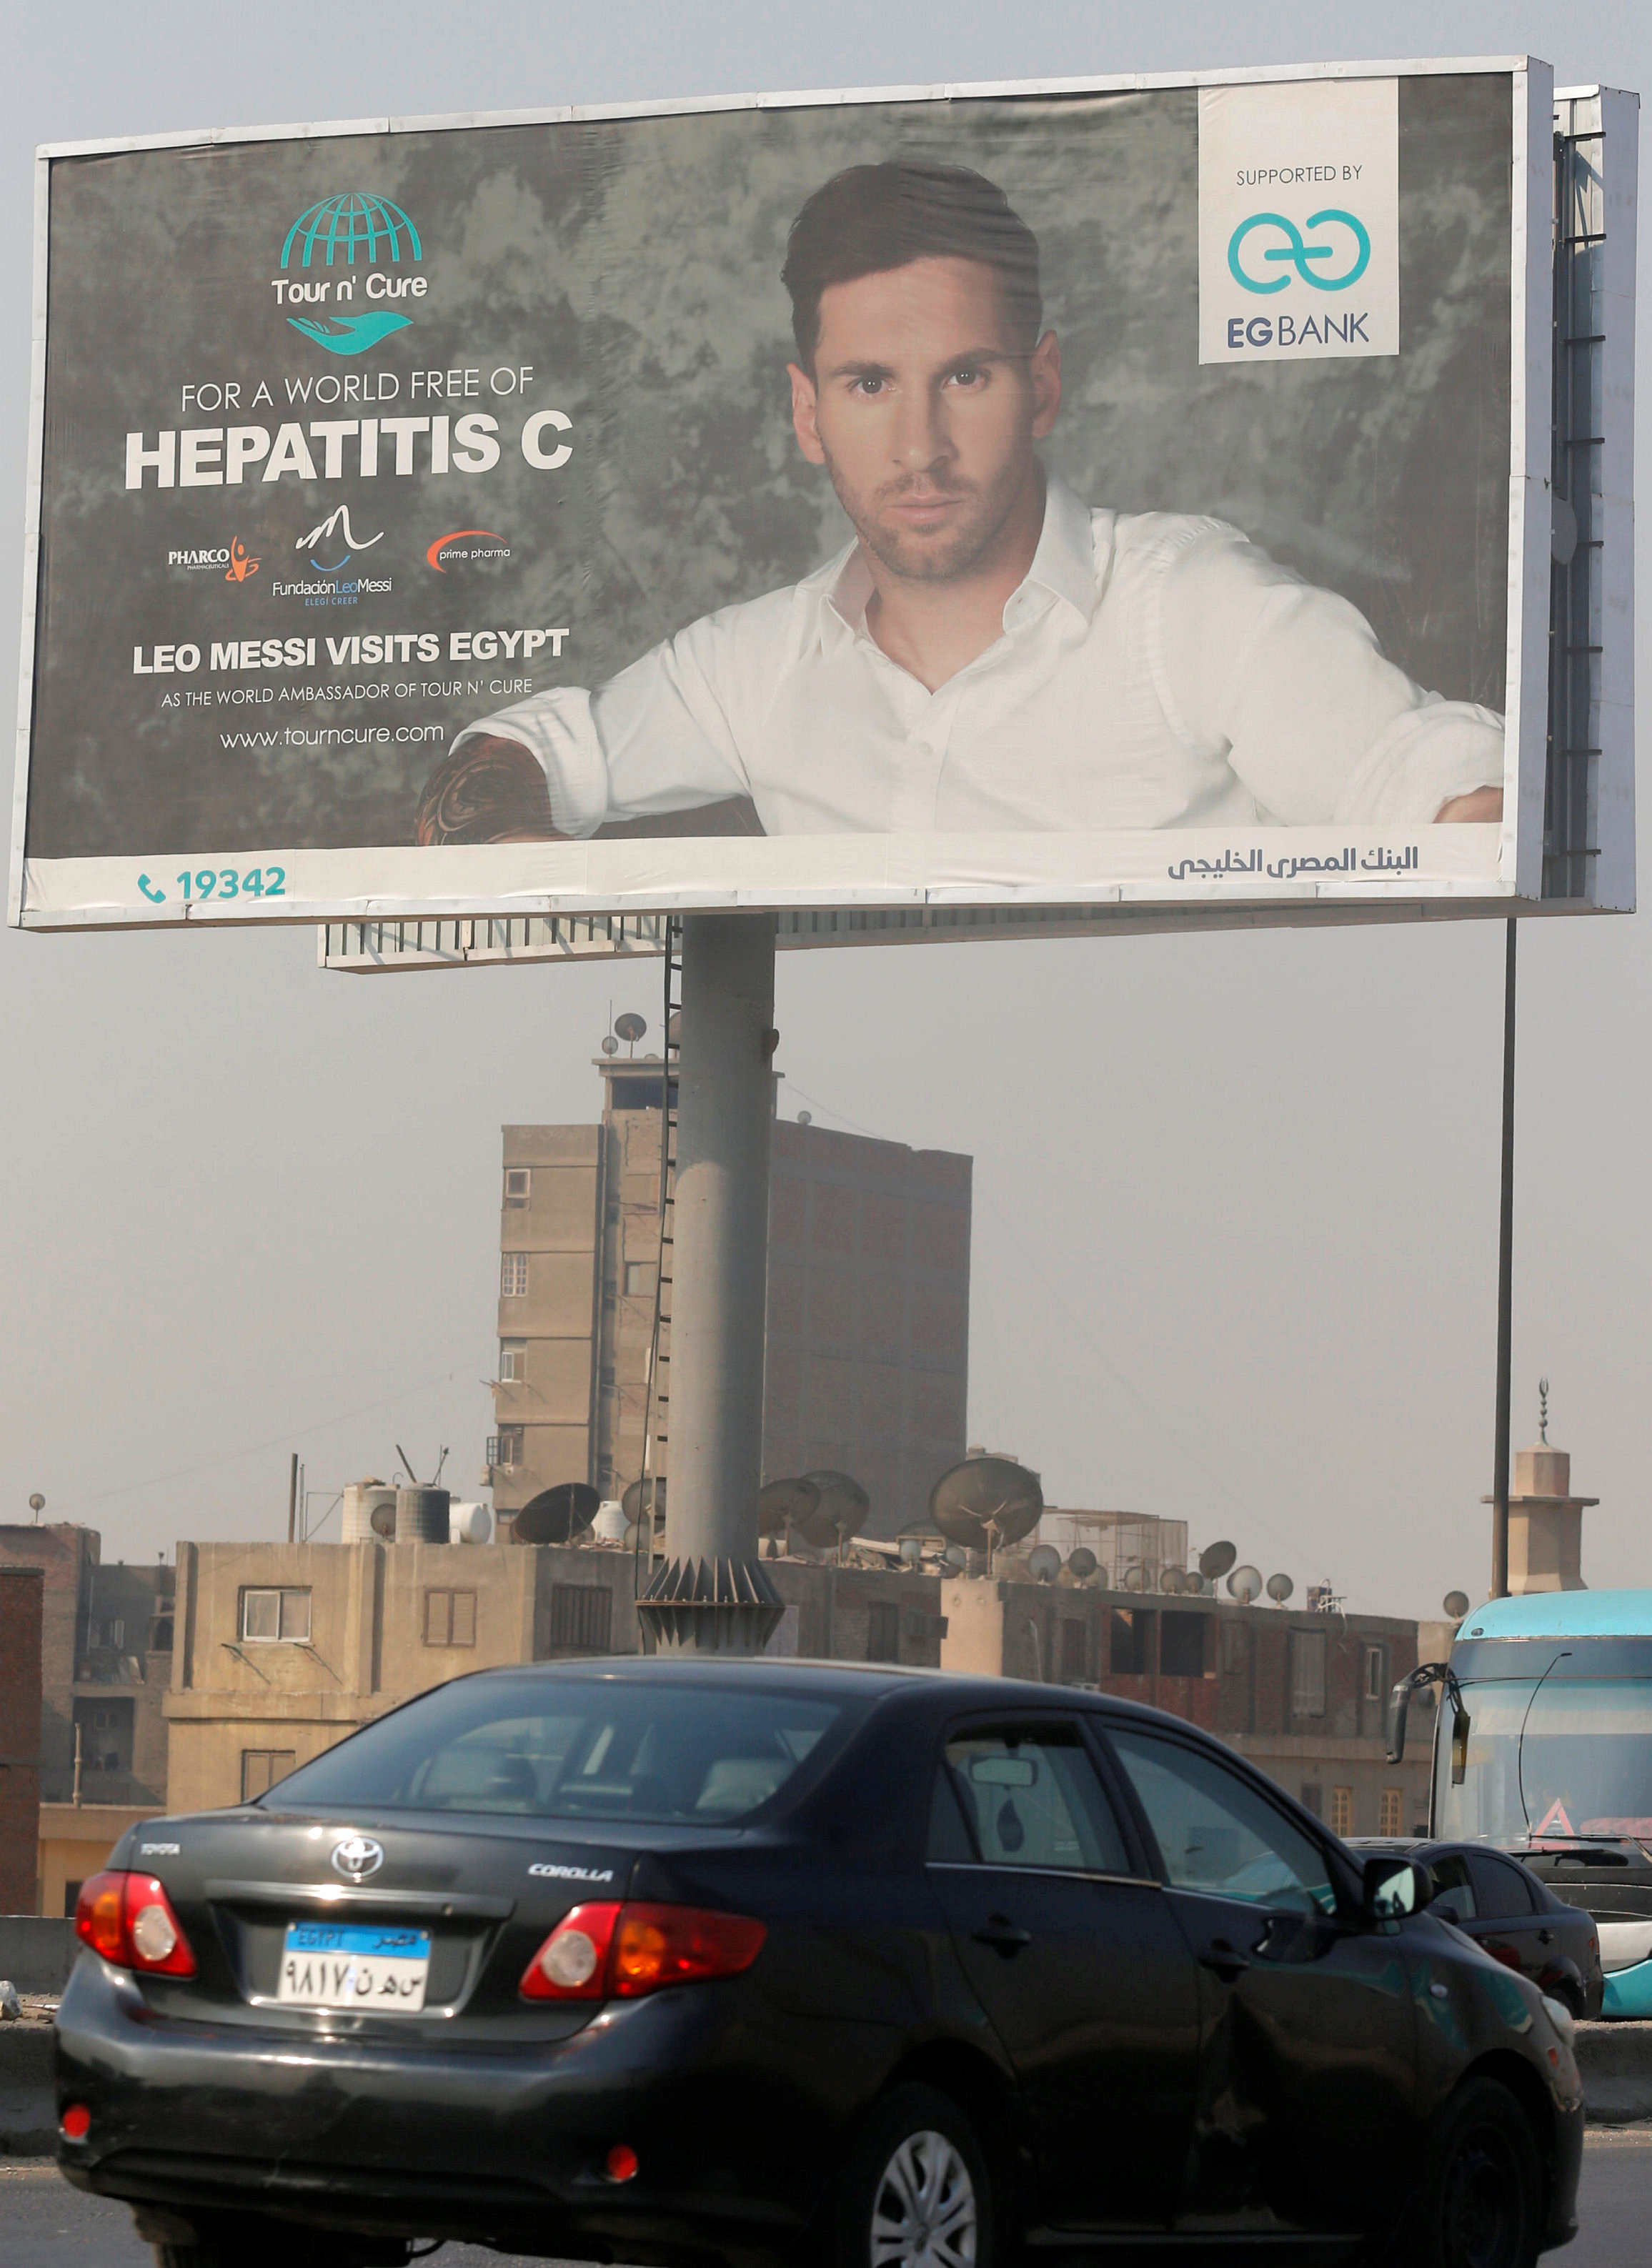 اعلانات تحمل صورة ليونيل ميسى فى محاور الطرق الرئيسية بالقاهرة قبل زيارته لمصر 1